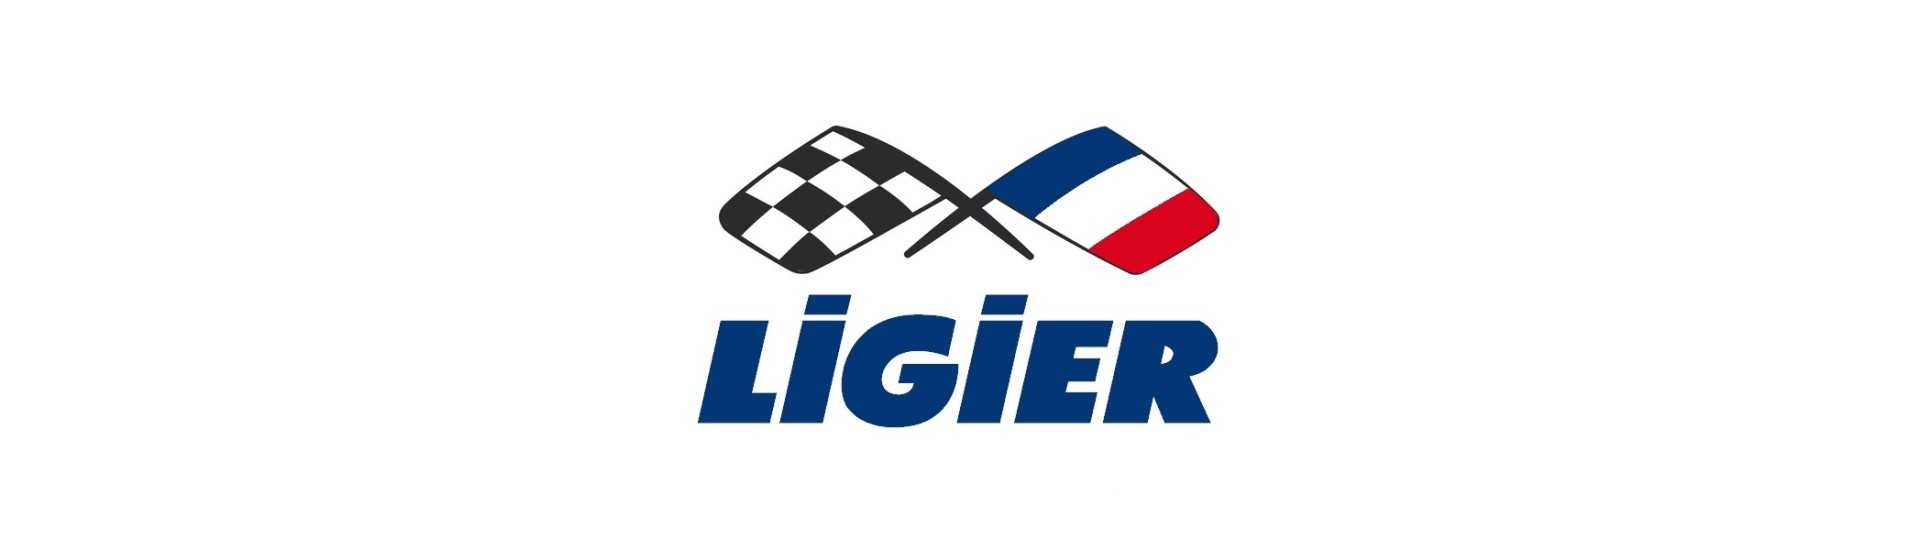 Moyeu + jarrulevy parhaaseen hintaan ilman lisenssiä Ligier